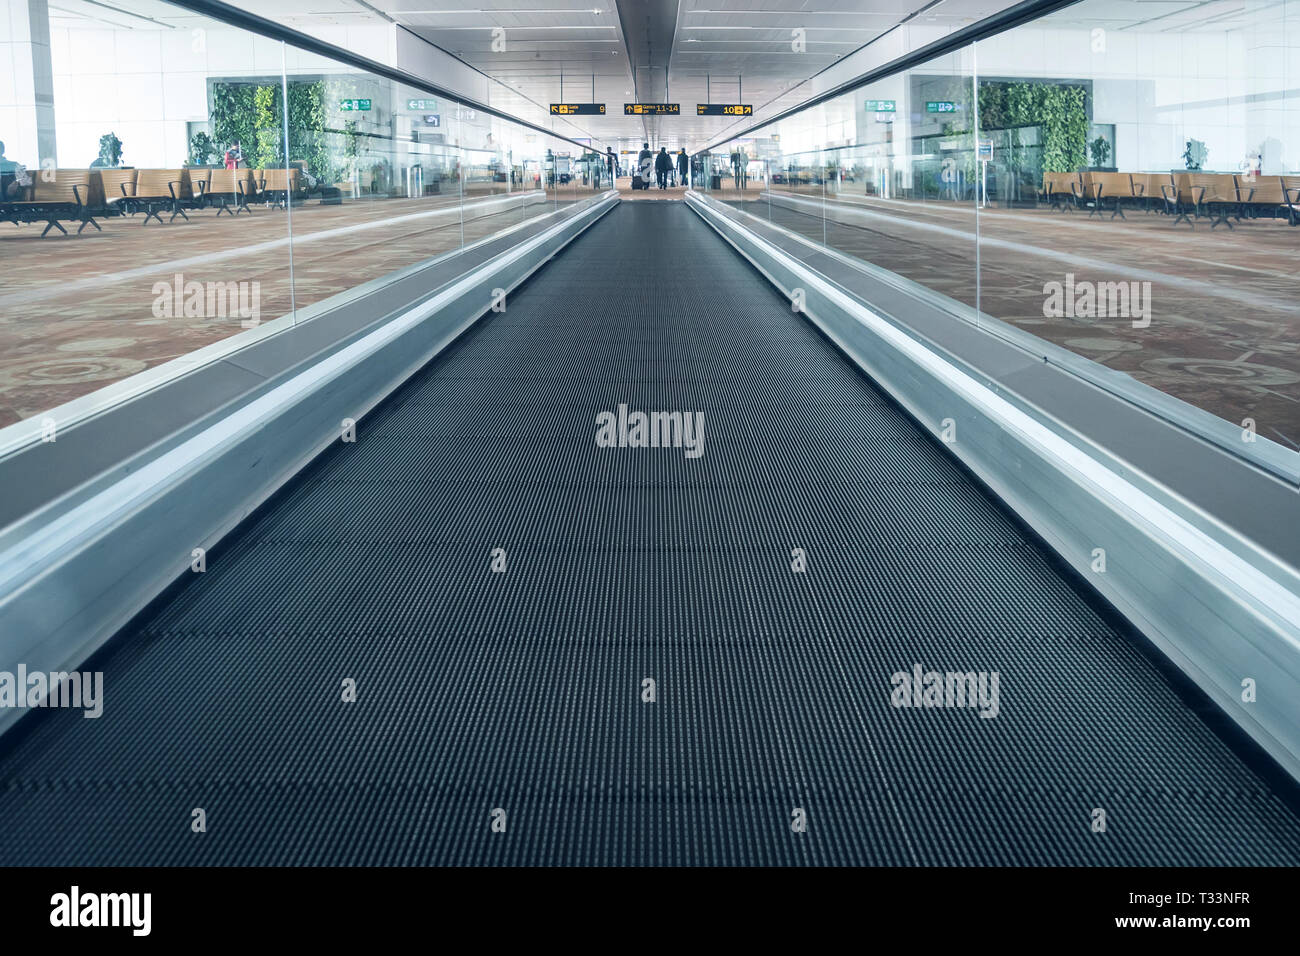 Escaleras mecánicas en el aeropuerto. Escalera interior del aeropuerto Pudong de India. Foto de stock